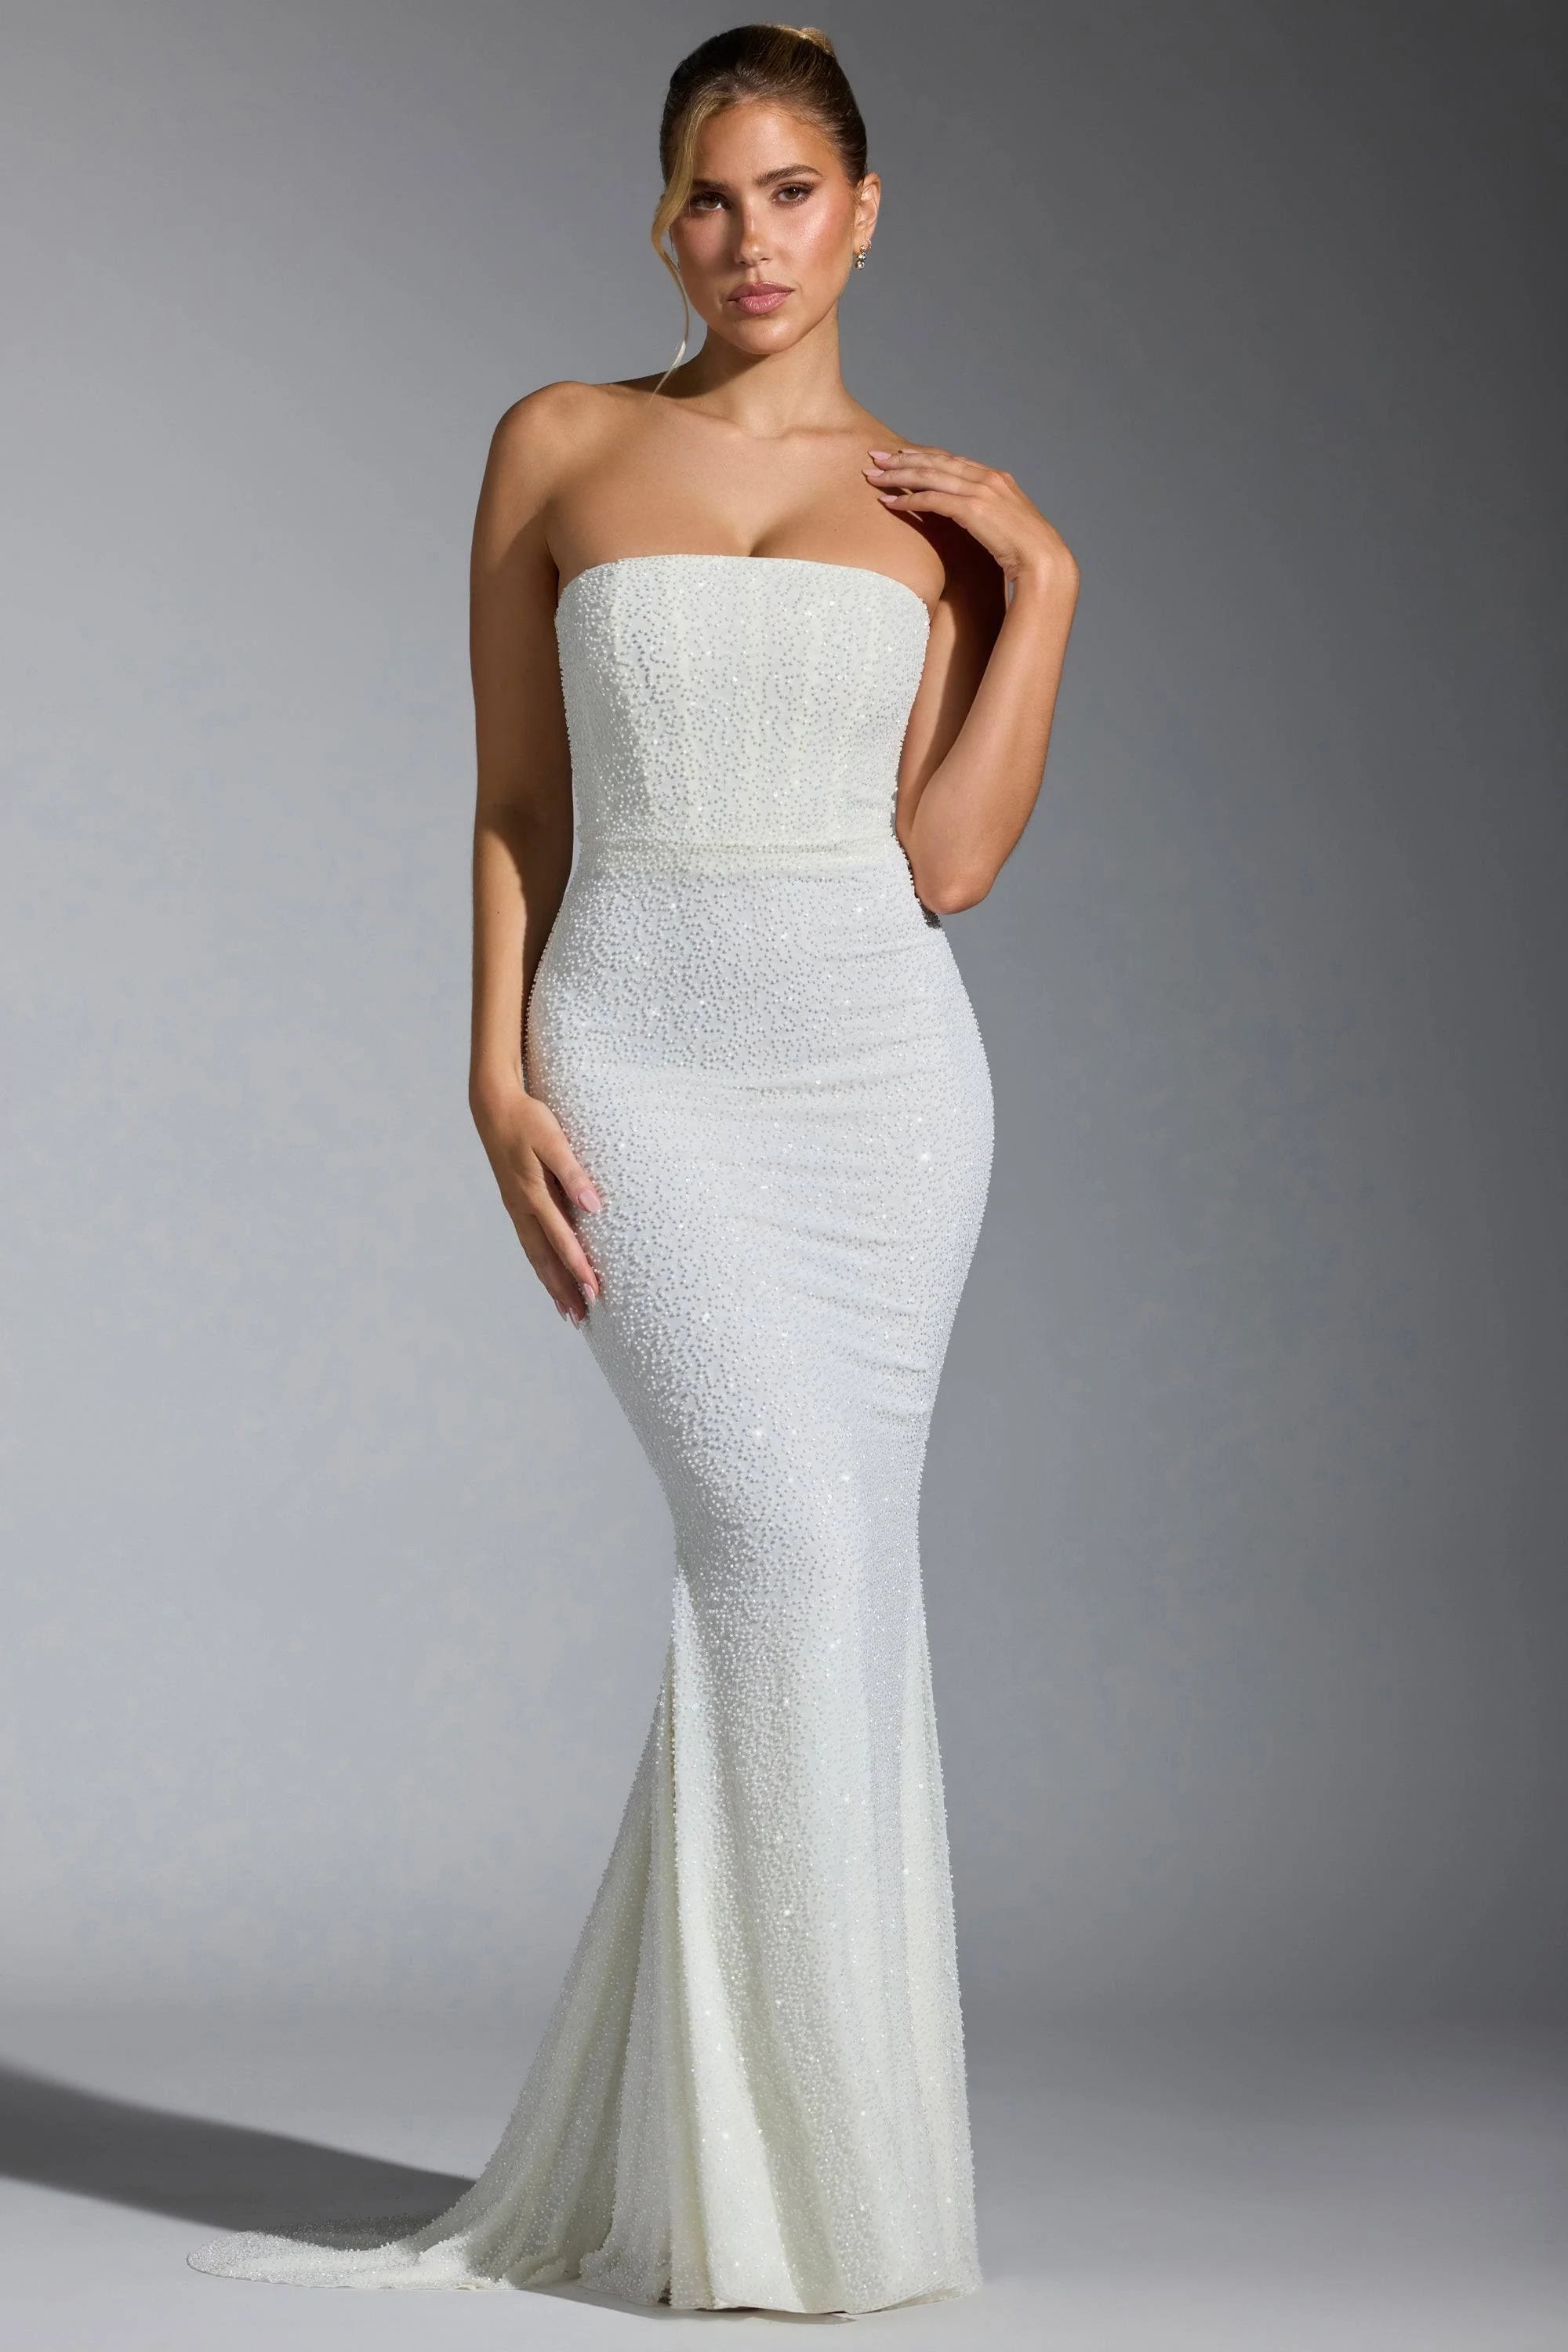 Elegant Embellished Corset Gown for Evening Events | Image